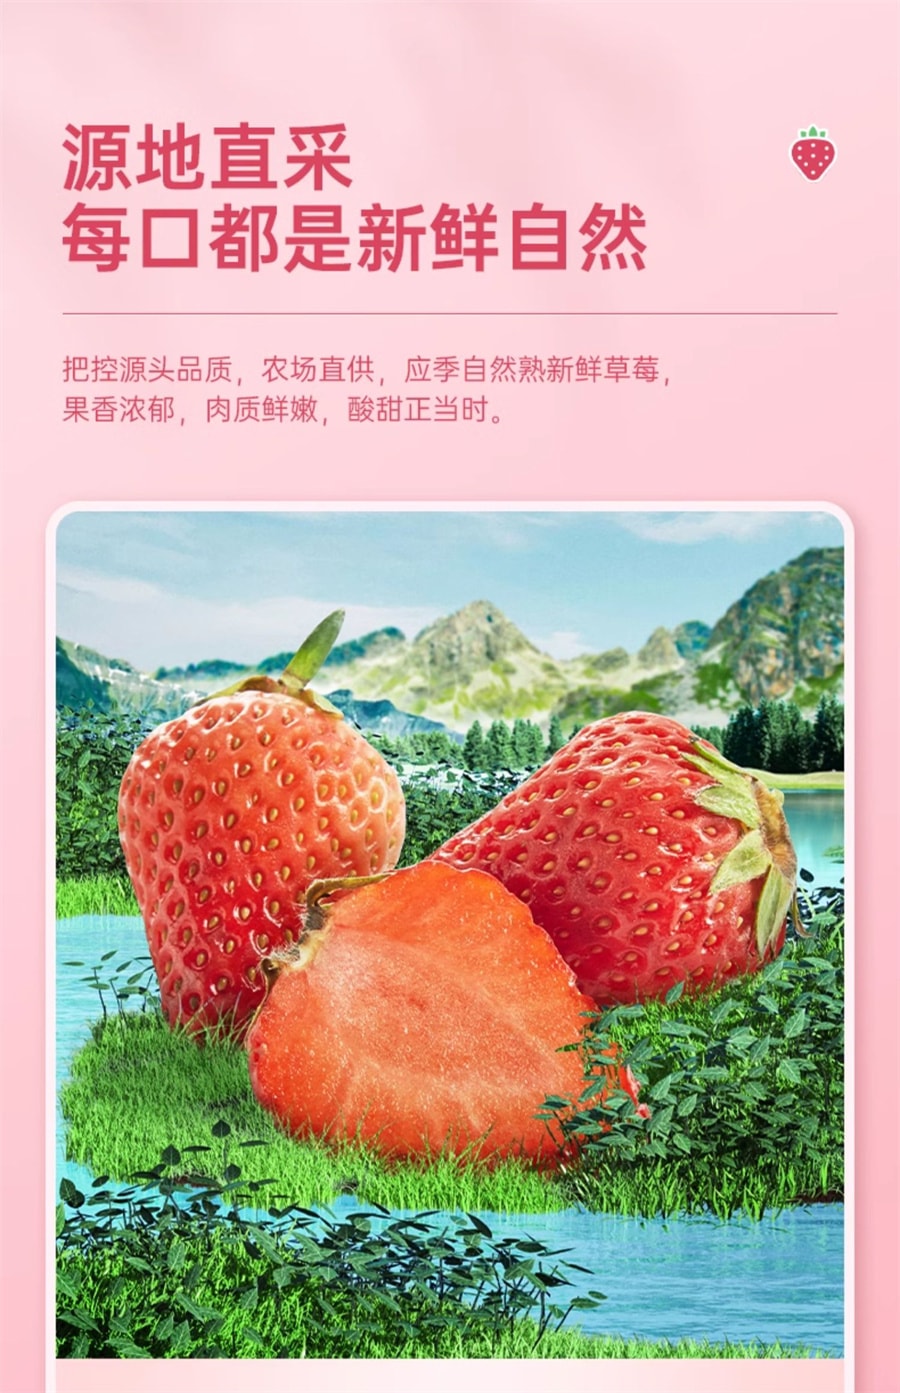 【中国直邮】比比赞 冻干草莓水果干脆果脯草莓干冻干健康零食小吃网红休闲食品 38g/袋